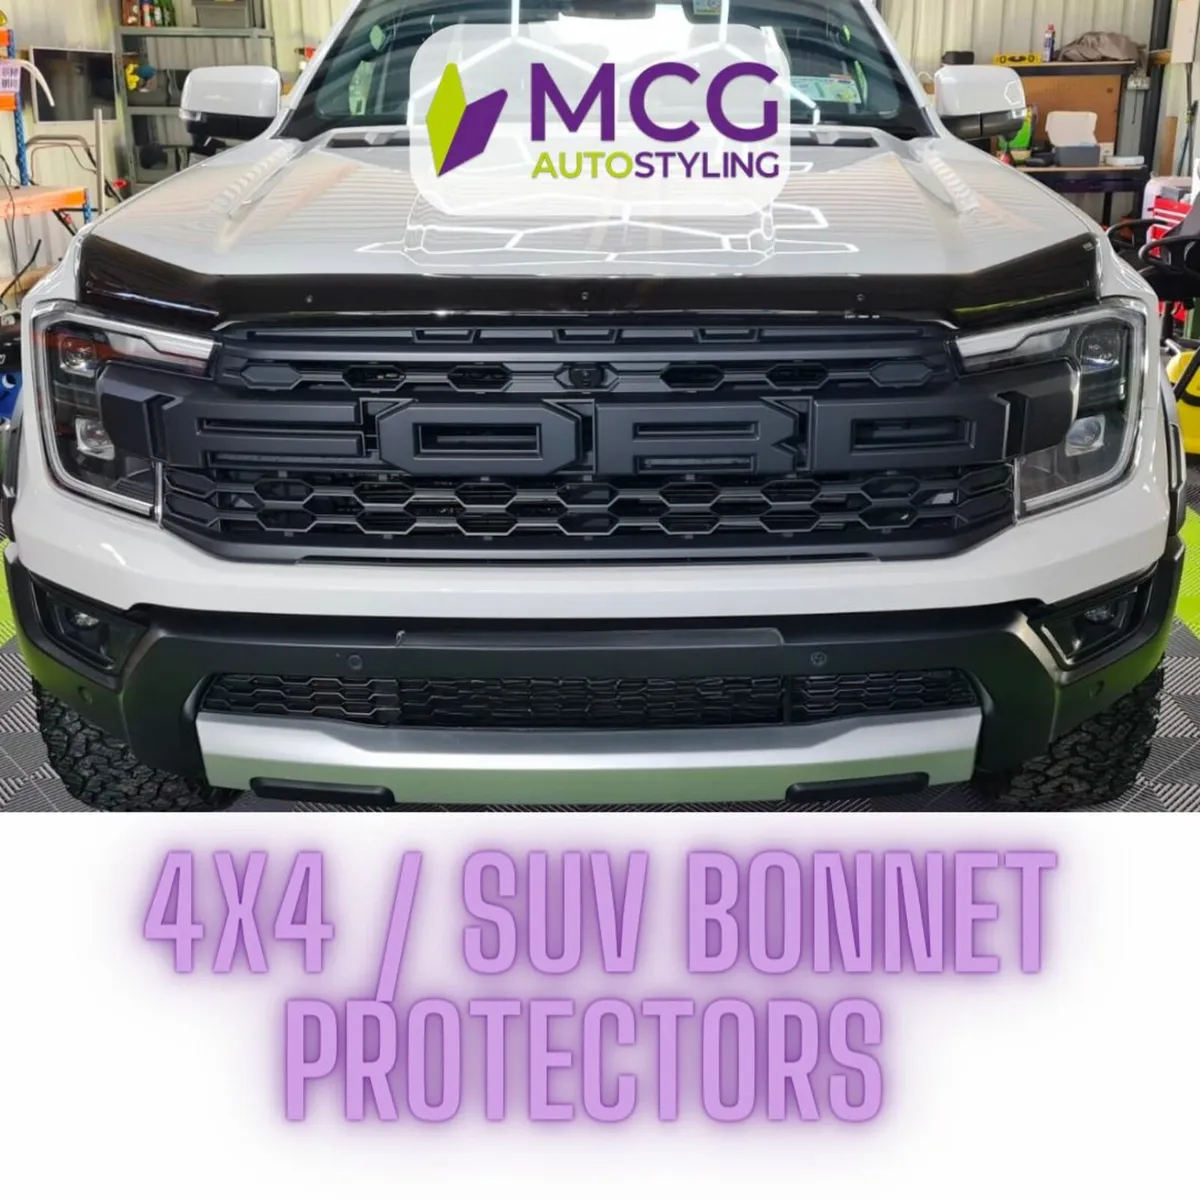 Van & 4x4 Bonnet Protectors